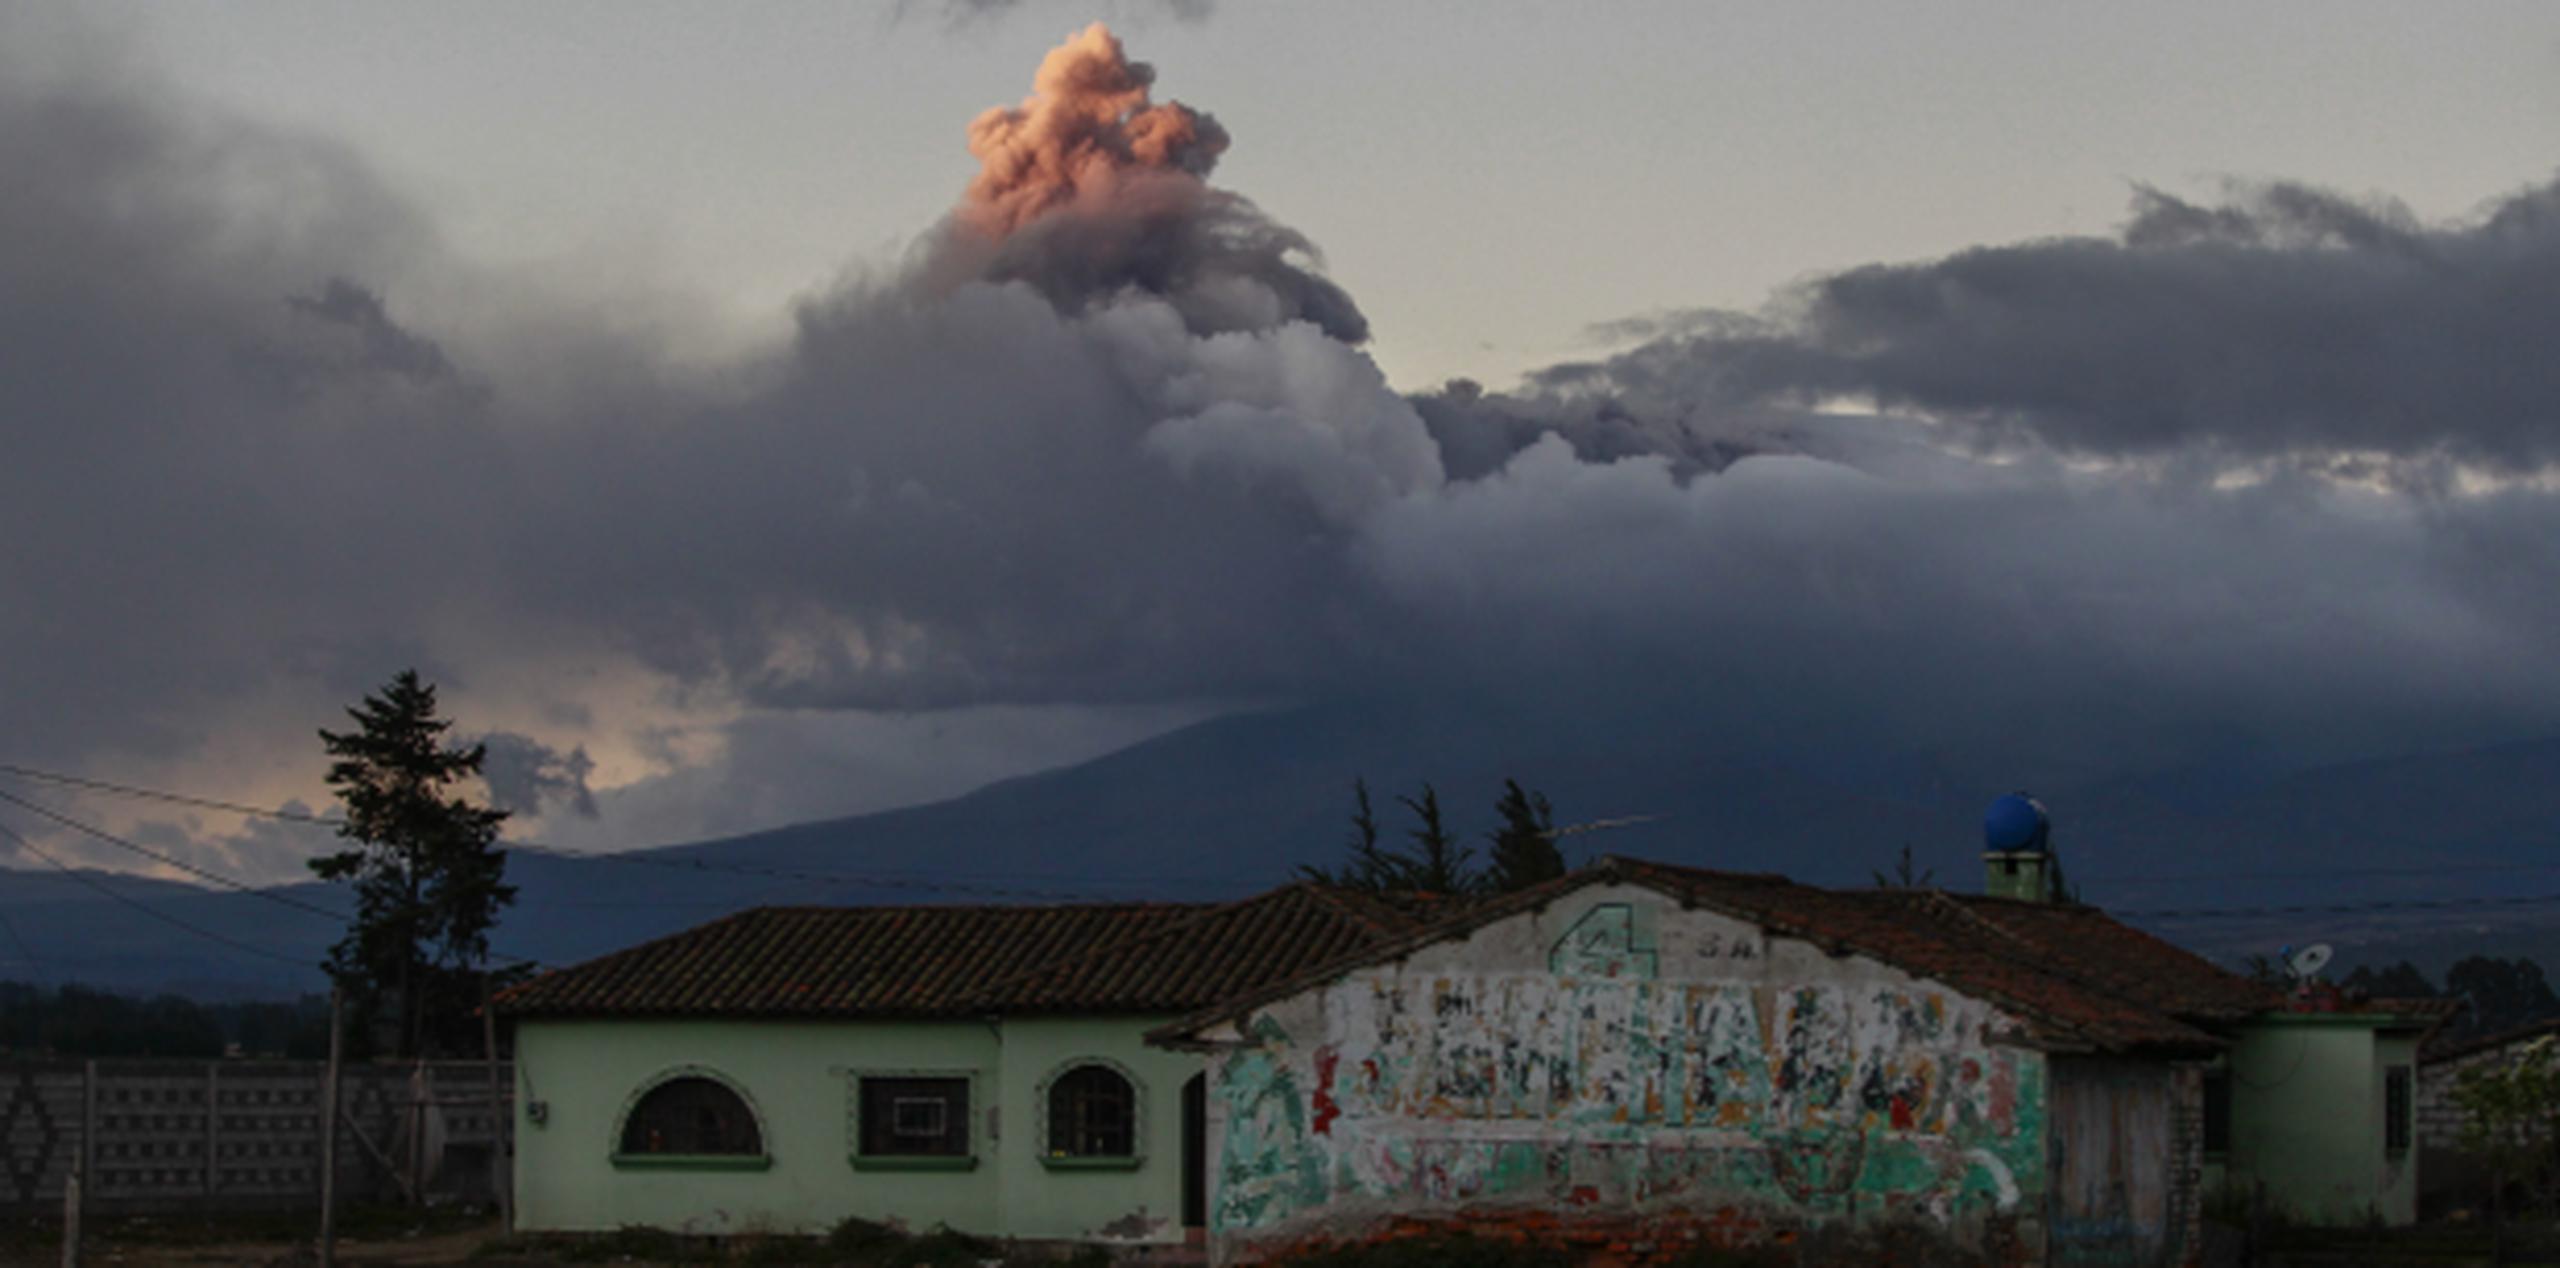 A pesar de la situación, el coloso no ha entrado en erupción, de acuerdo con el diagnóstico del Instituto Geofísico. (EFE)